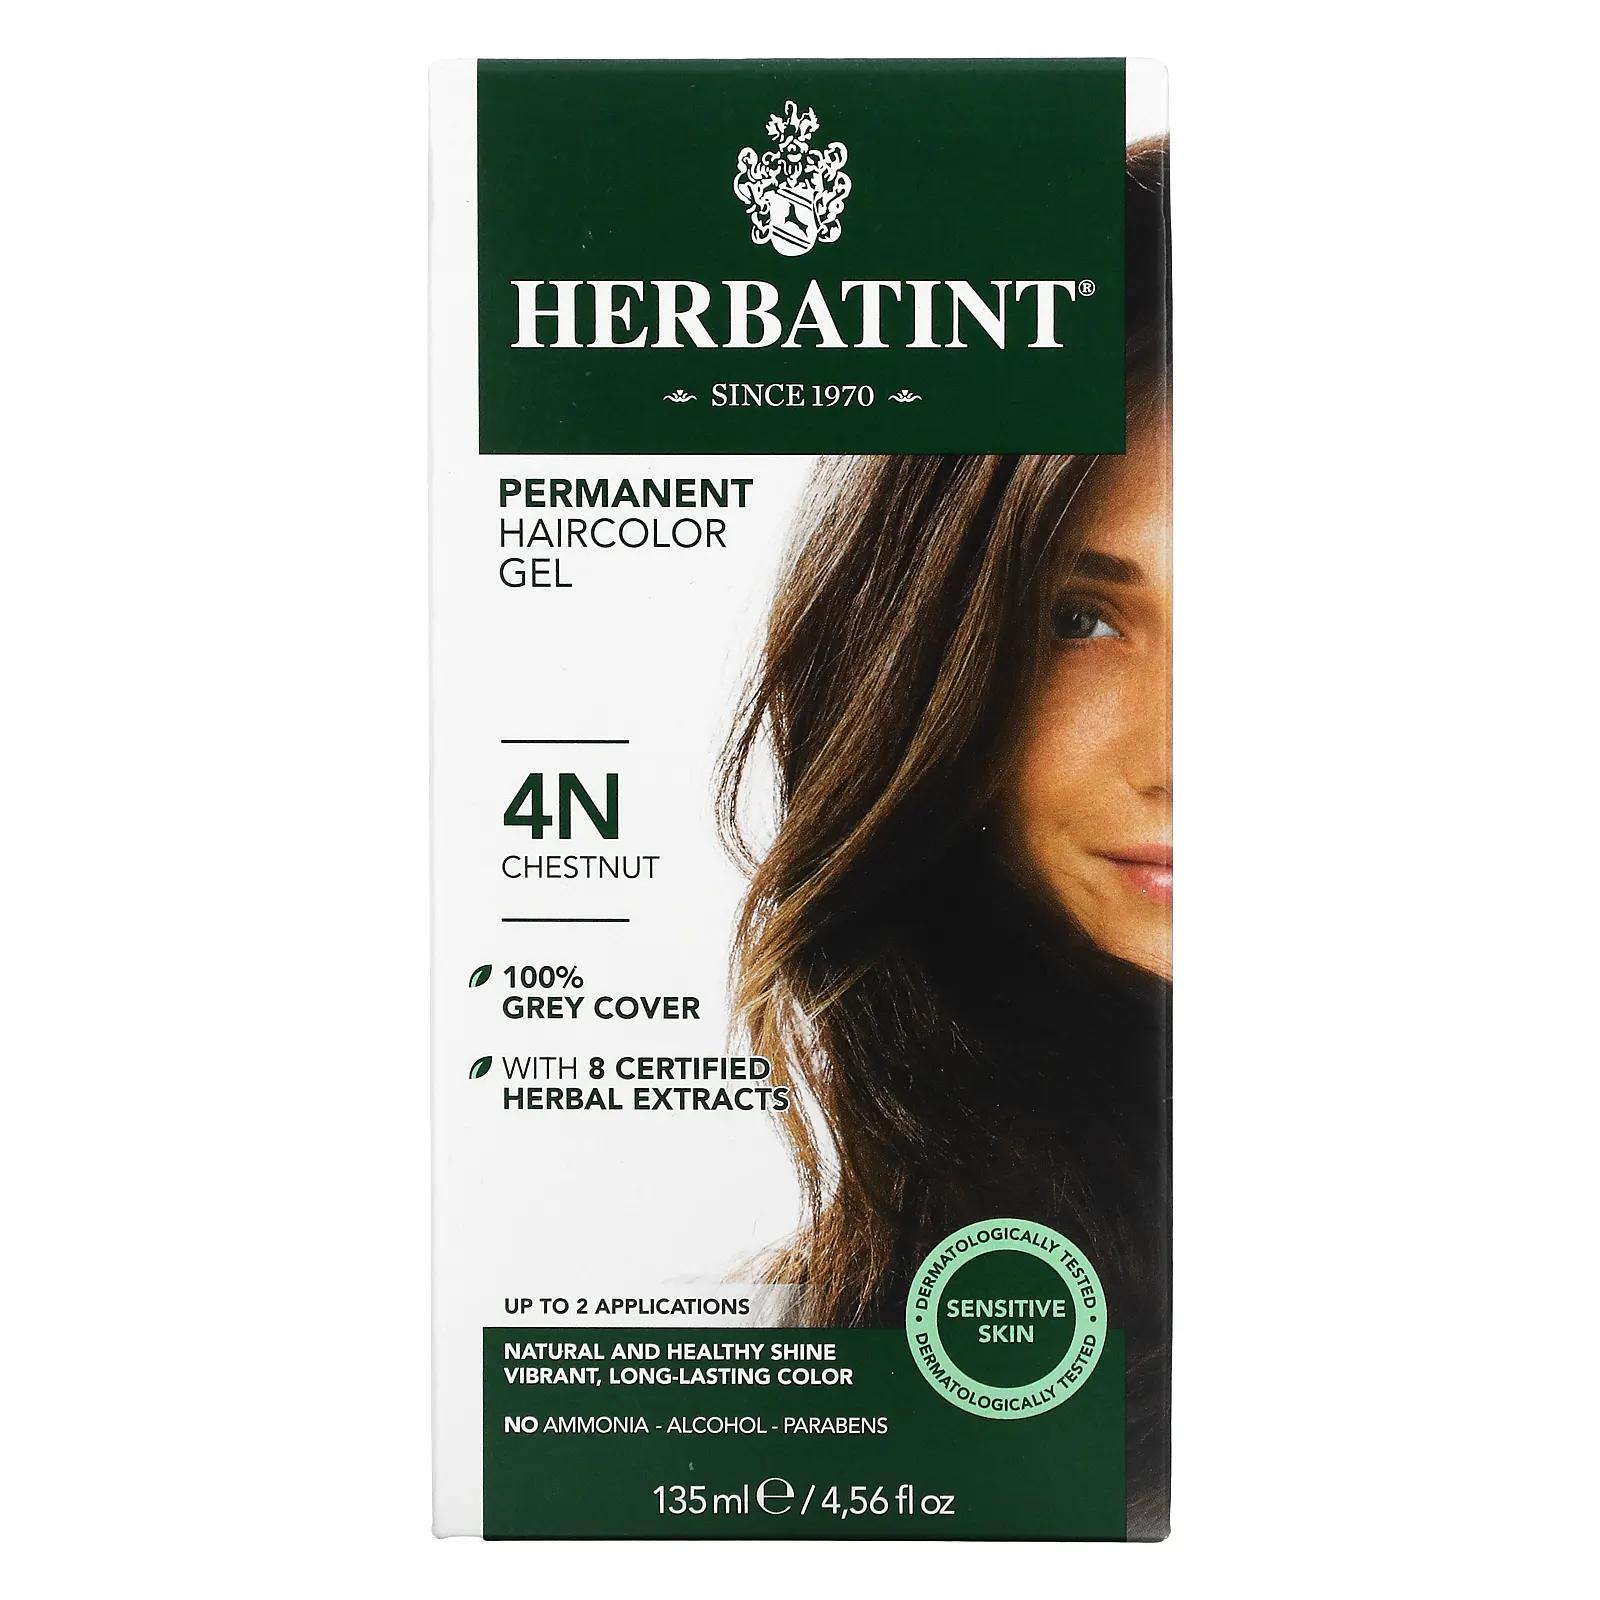 Herbatint Перманентная растительная краска-гель для волос 4N каштан 4,56 жидкой унции (135 мл) herbatint перманентная краска гель для волос 5m светлый махагоновый каштан 4 56 жидкой унции 135 мл